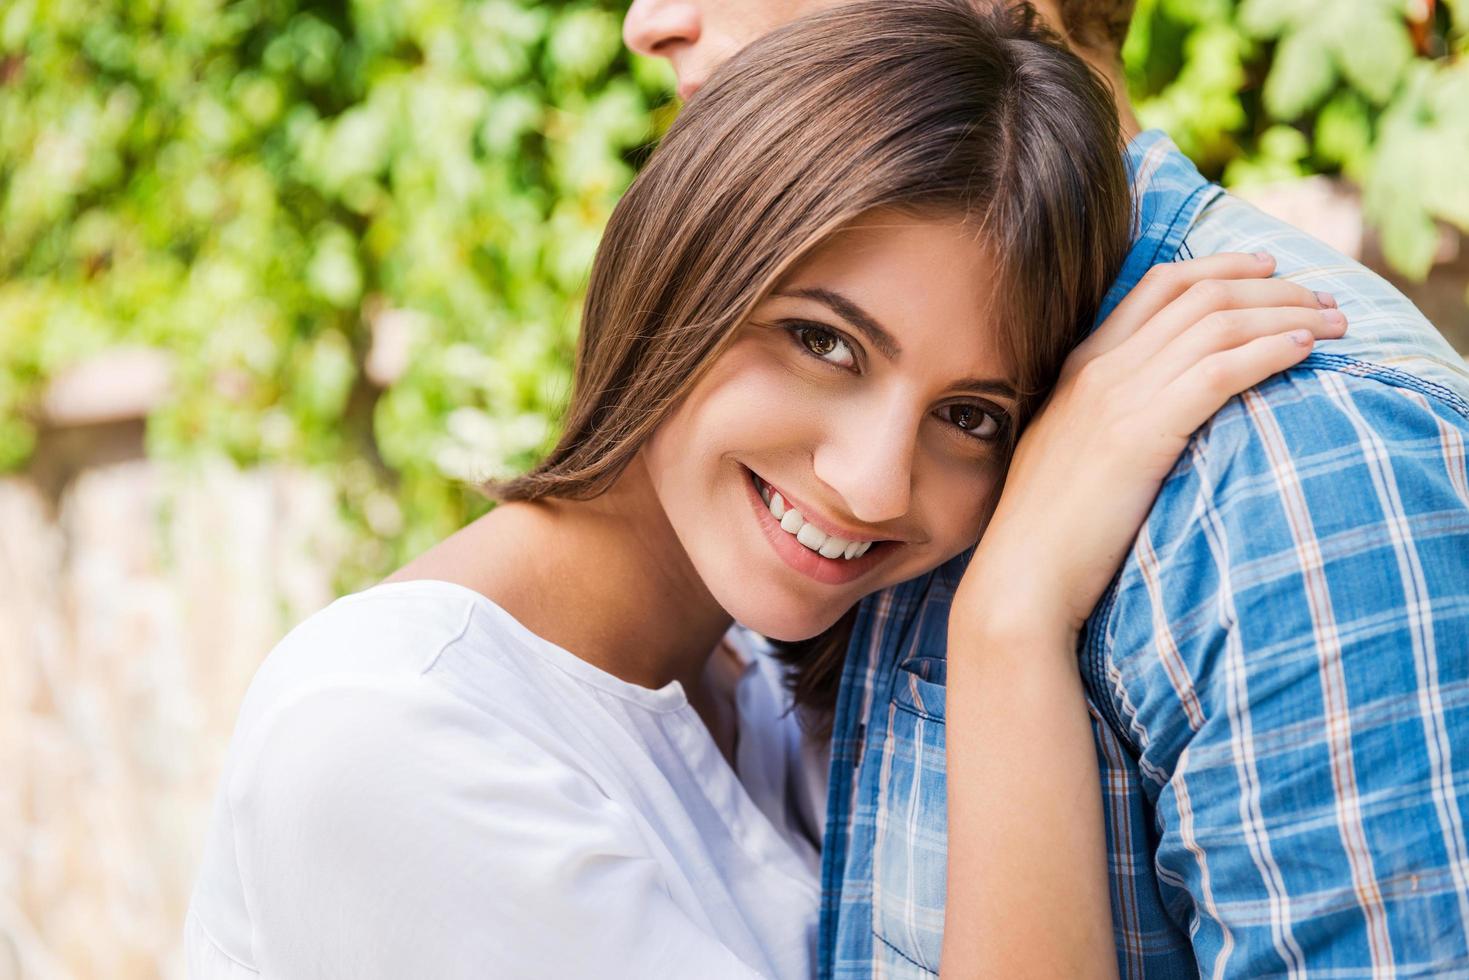 sentindo-se seguro e tranquilo. mulher jovem e bonita se ligando ao namorado e sorrindo para a câmera enquanto ambos estão ao ar livre foto